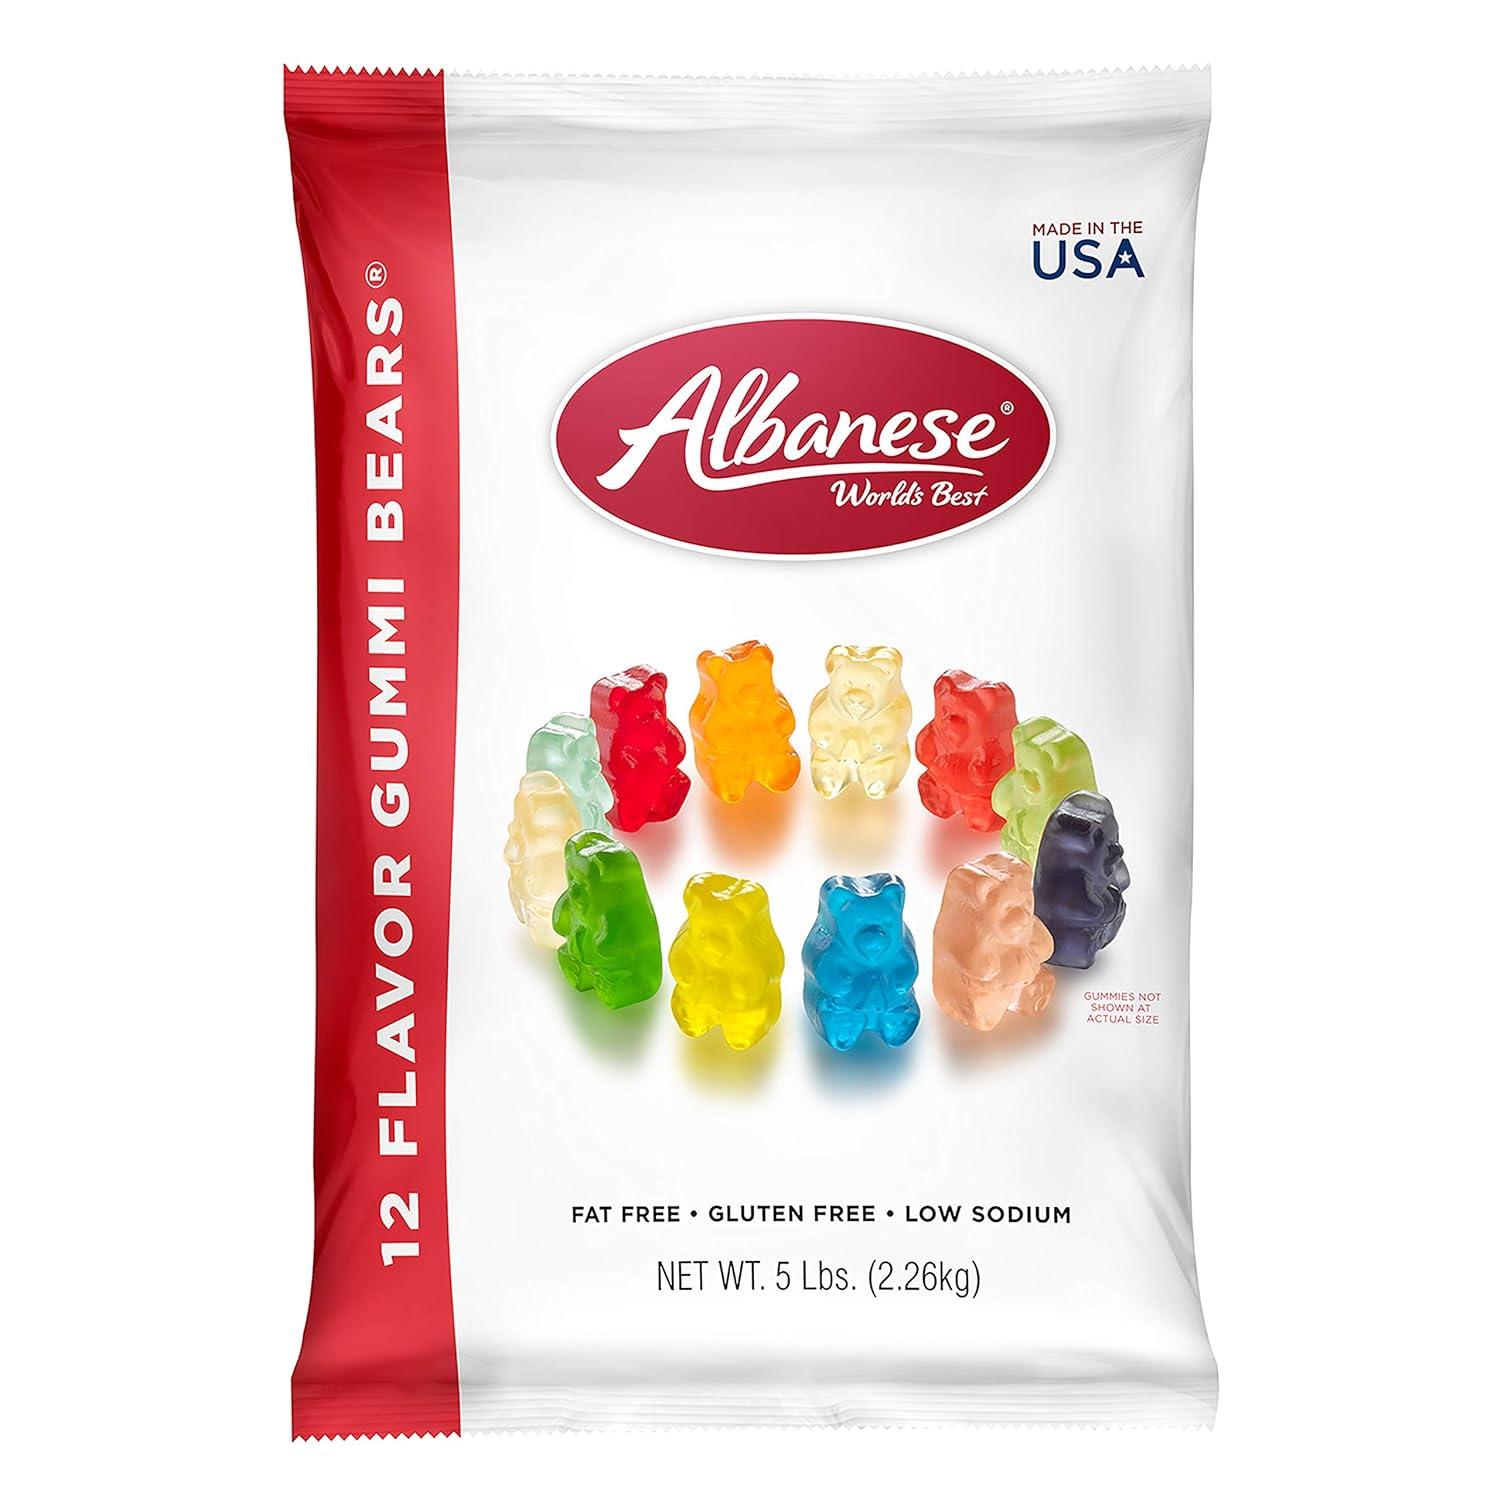 Albanese Worlds Best 12 Flavor Gummi Bears for $11.24